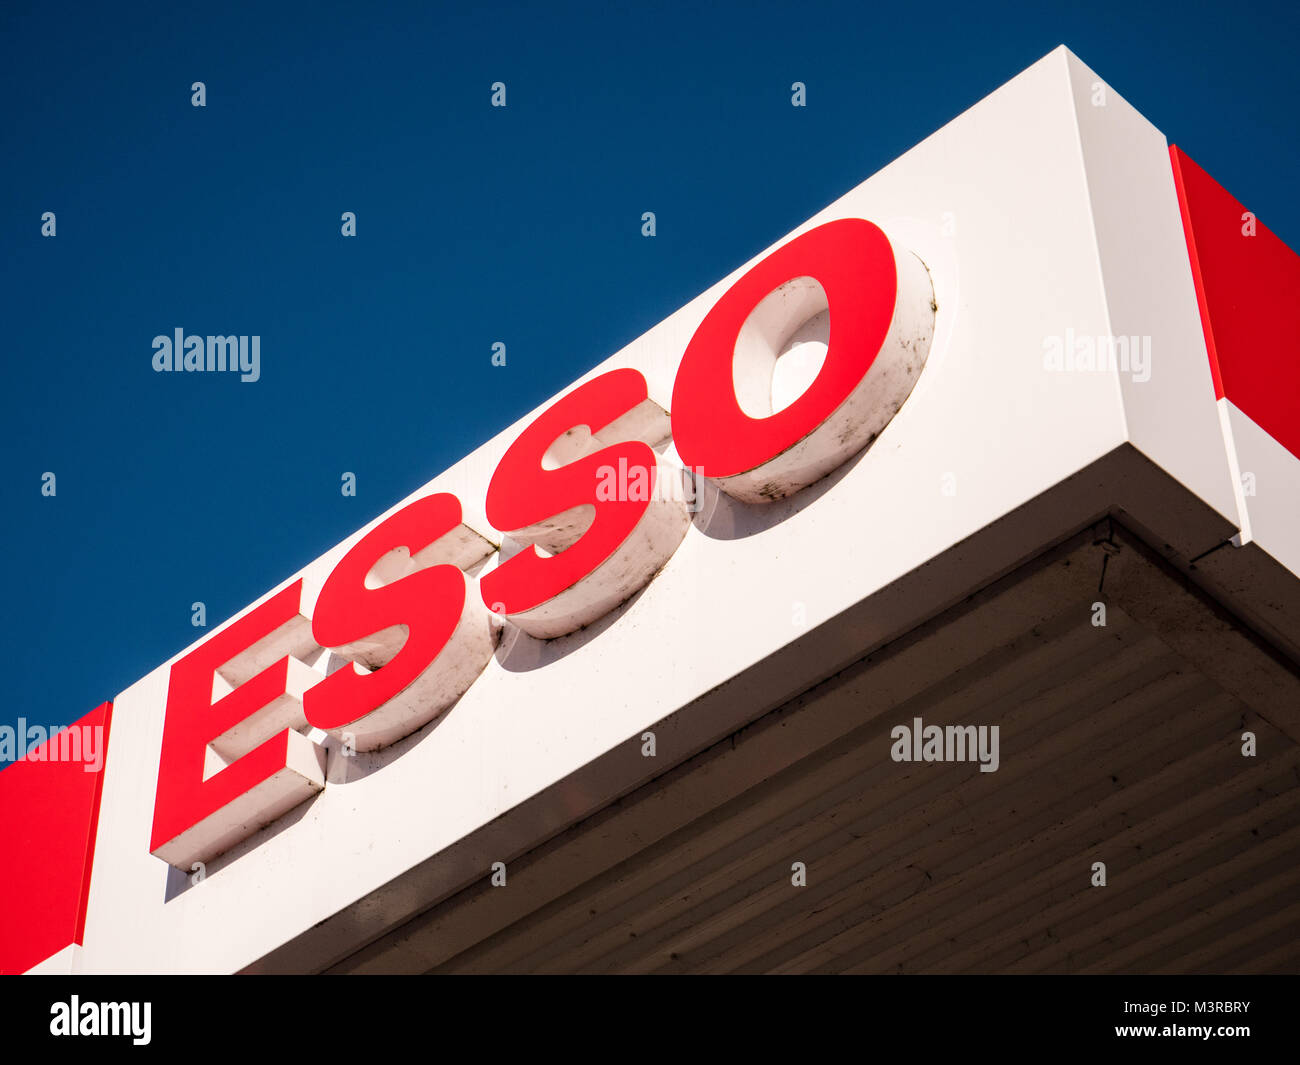 Esso Petrel Station, Tesco Express, Caversham, Reading, Berkshire, England. Stock Photo